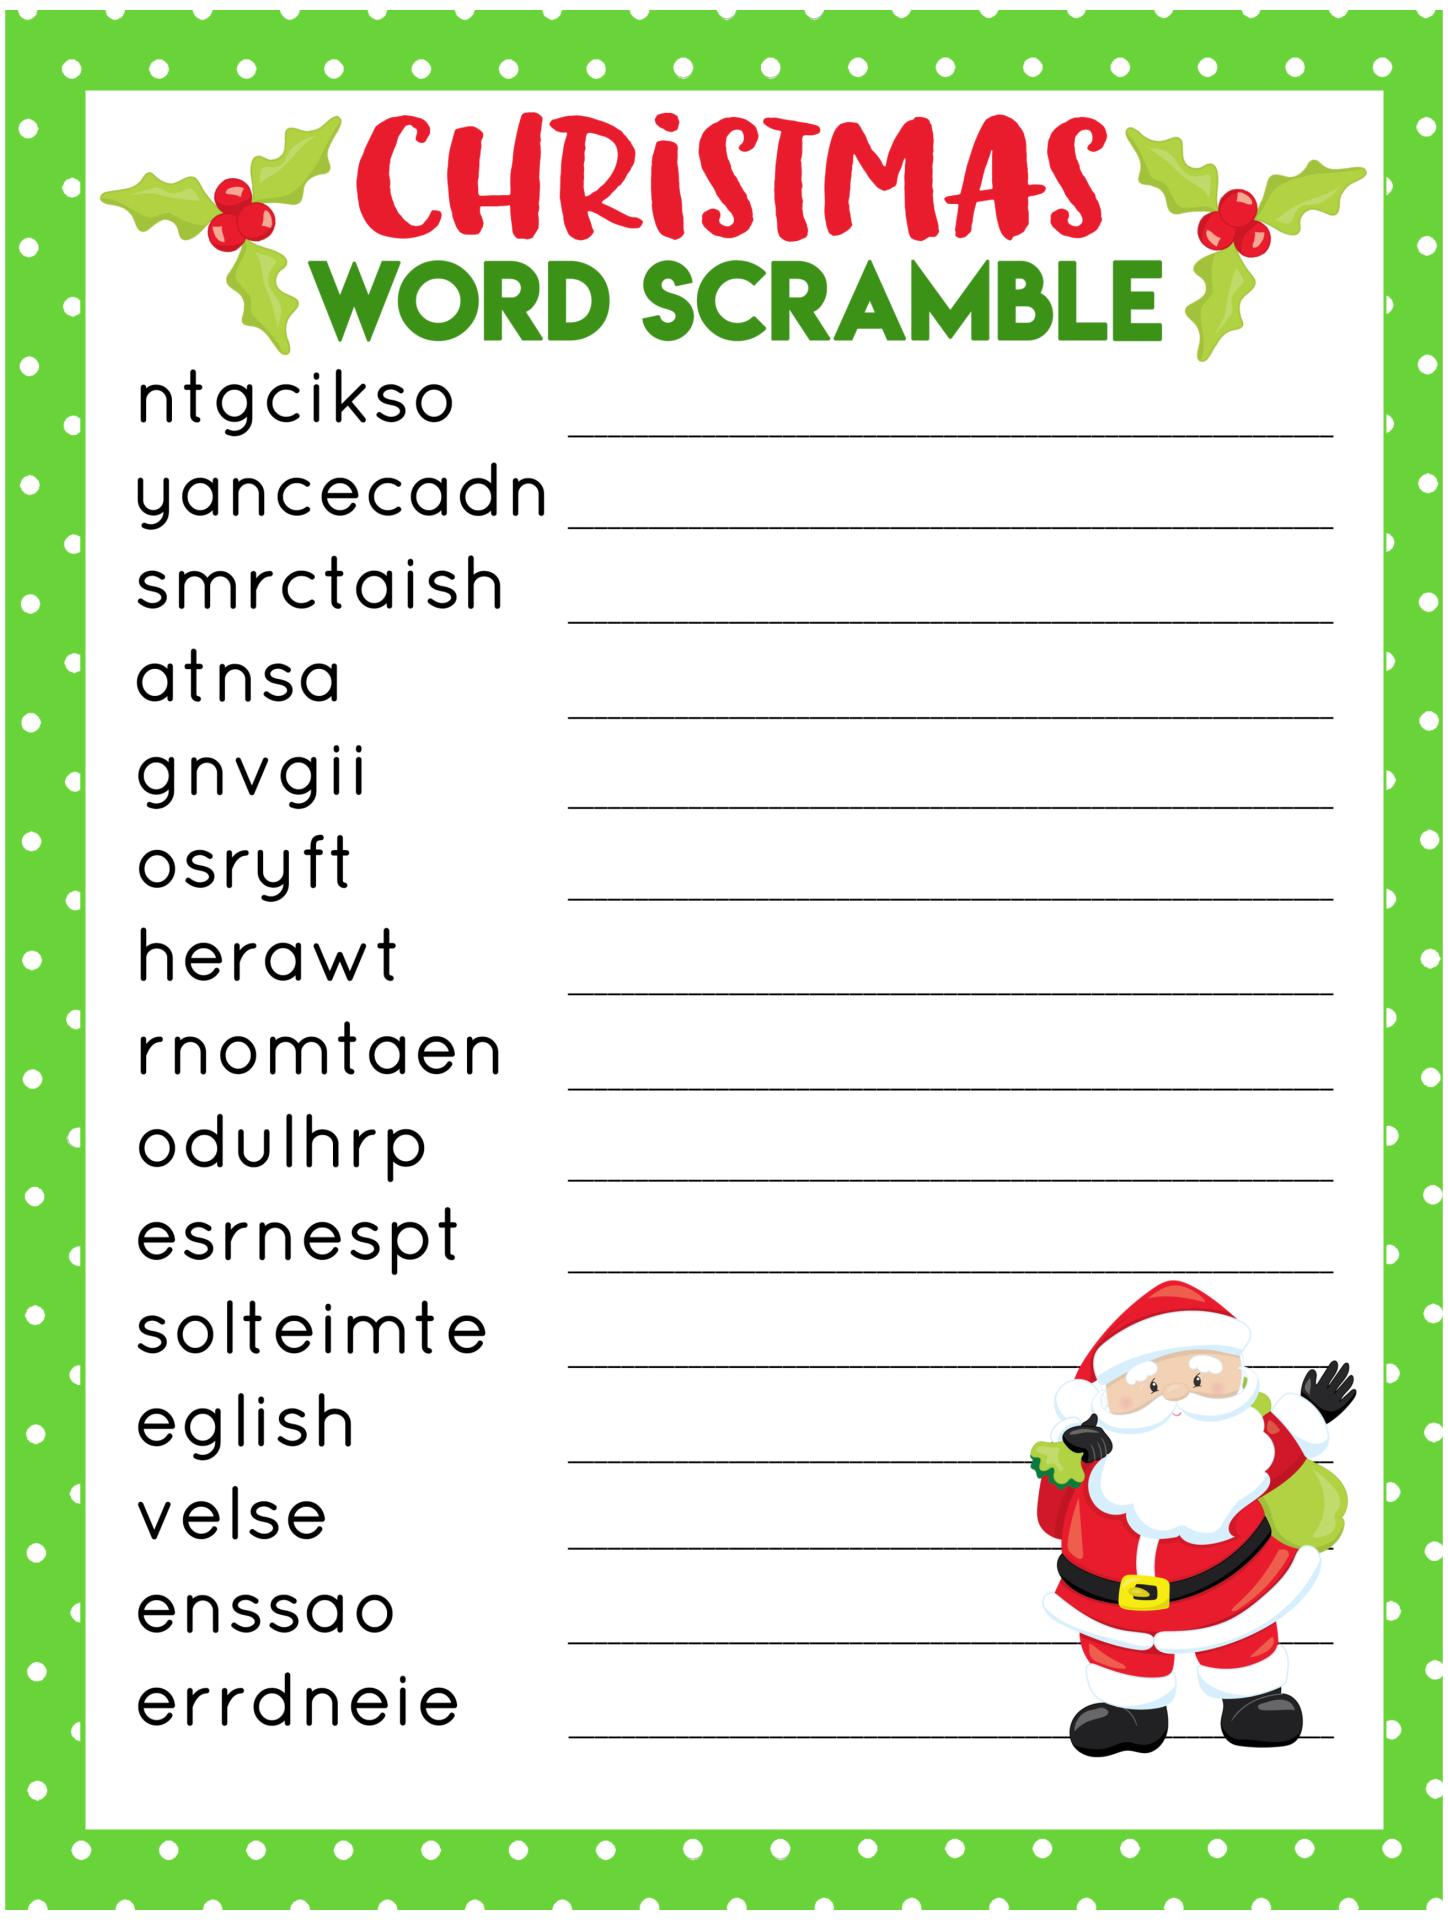 Best Christmas Word Scramble Printable Game Printablee The Best